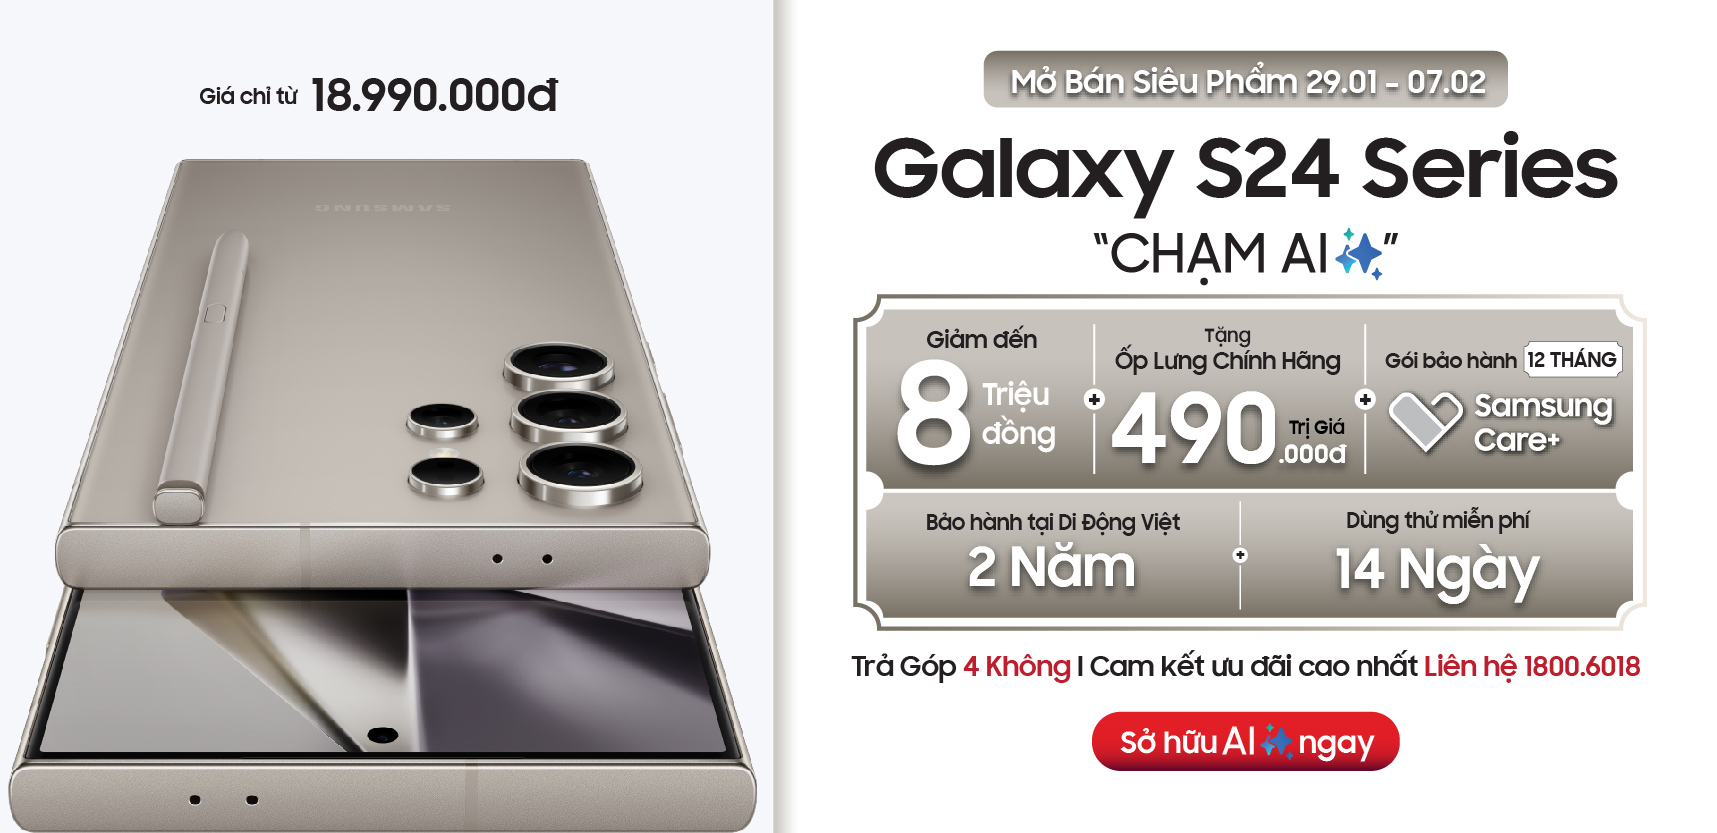 Ưu đãi Galaxy S24 Series tại Di Động Việt: Giảm thêm 3 triệu khi thu cũ đổi mới 29.01 – 07.02